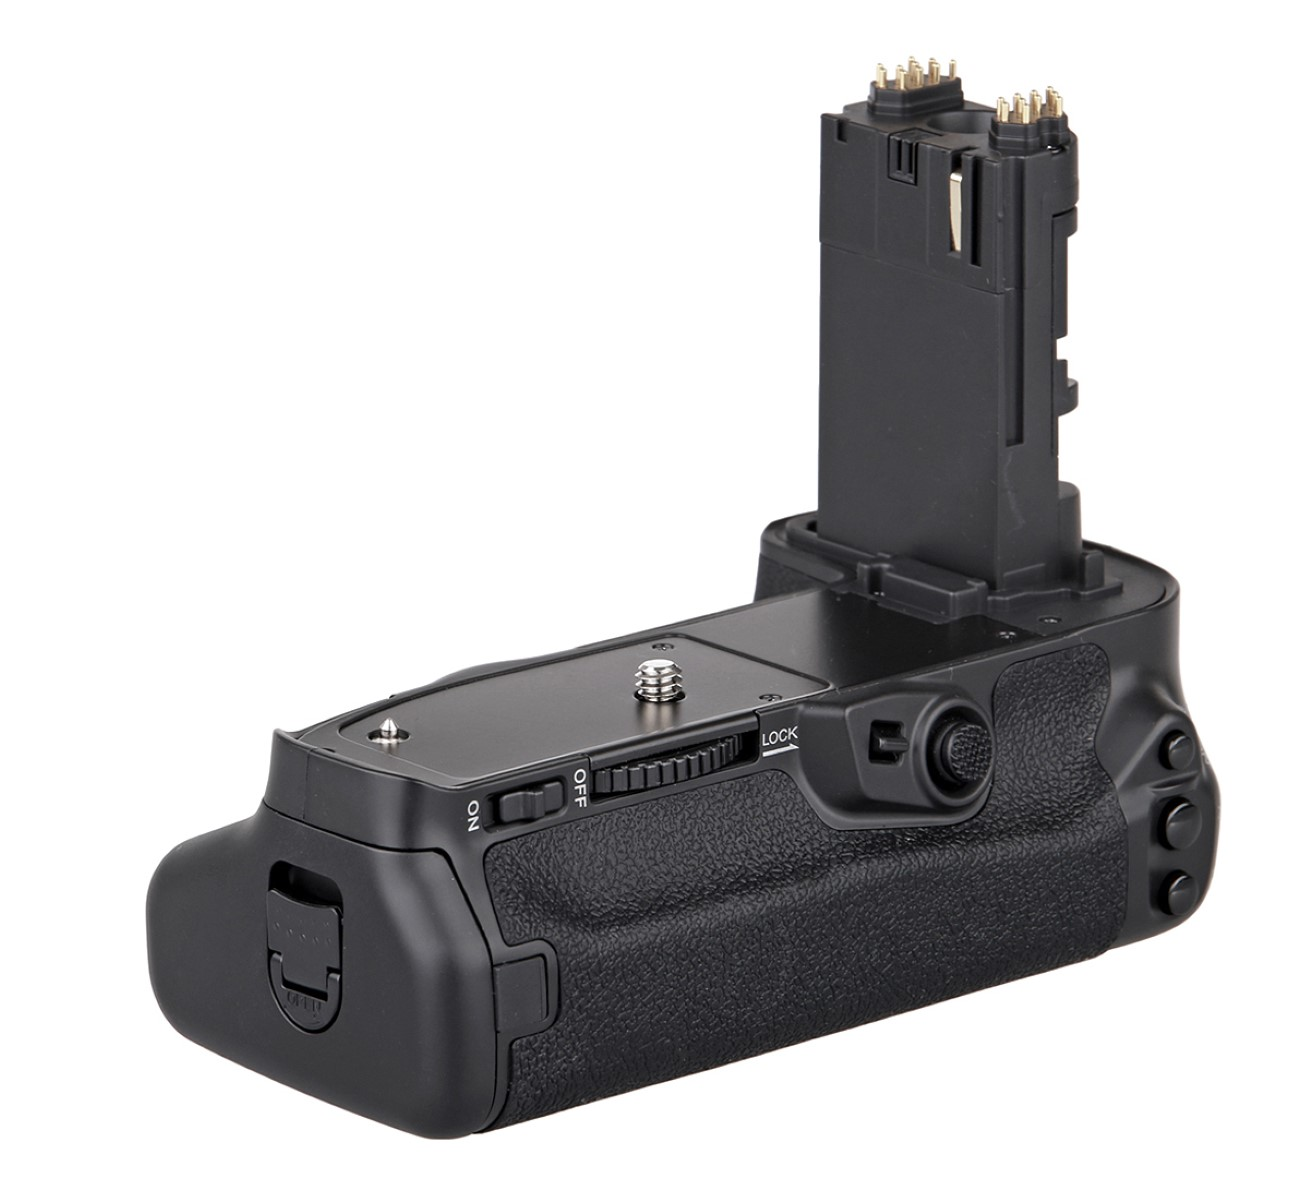 MEIKE Batteriegriff mit Pro, wie EOS MK-5D4 Black Canon Batteriegriff, 5D IV BG-E20 Mark Timer-Fernbedienung